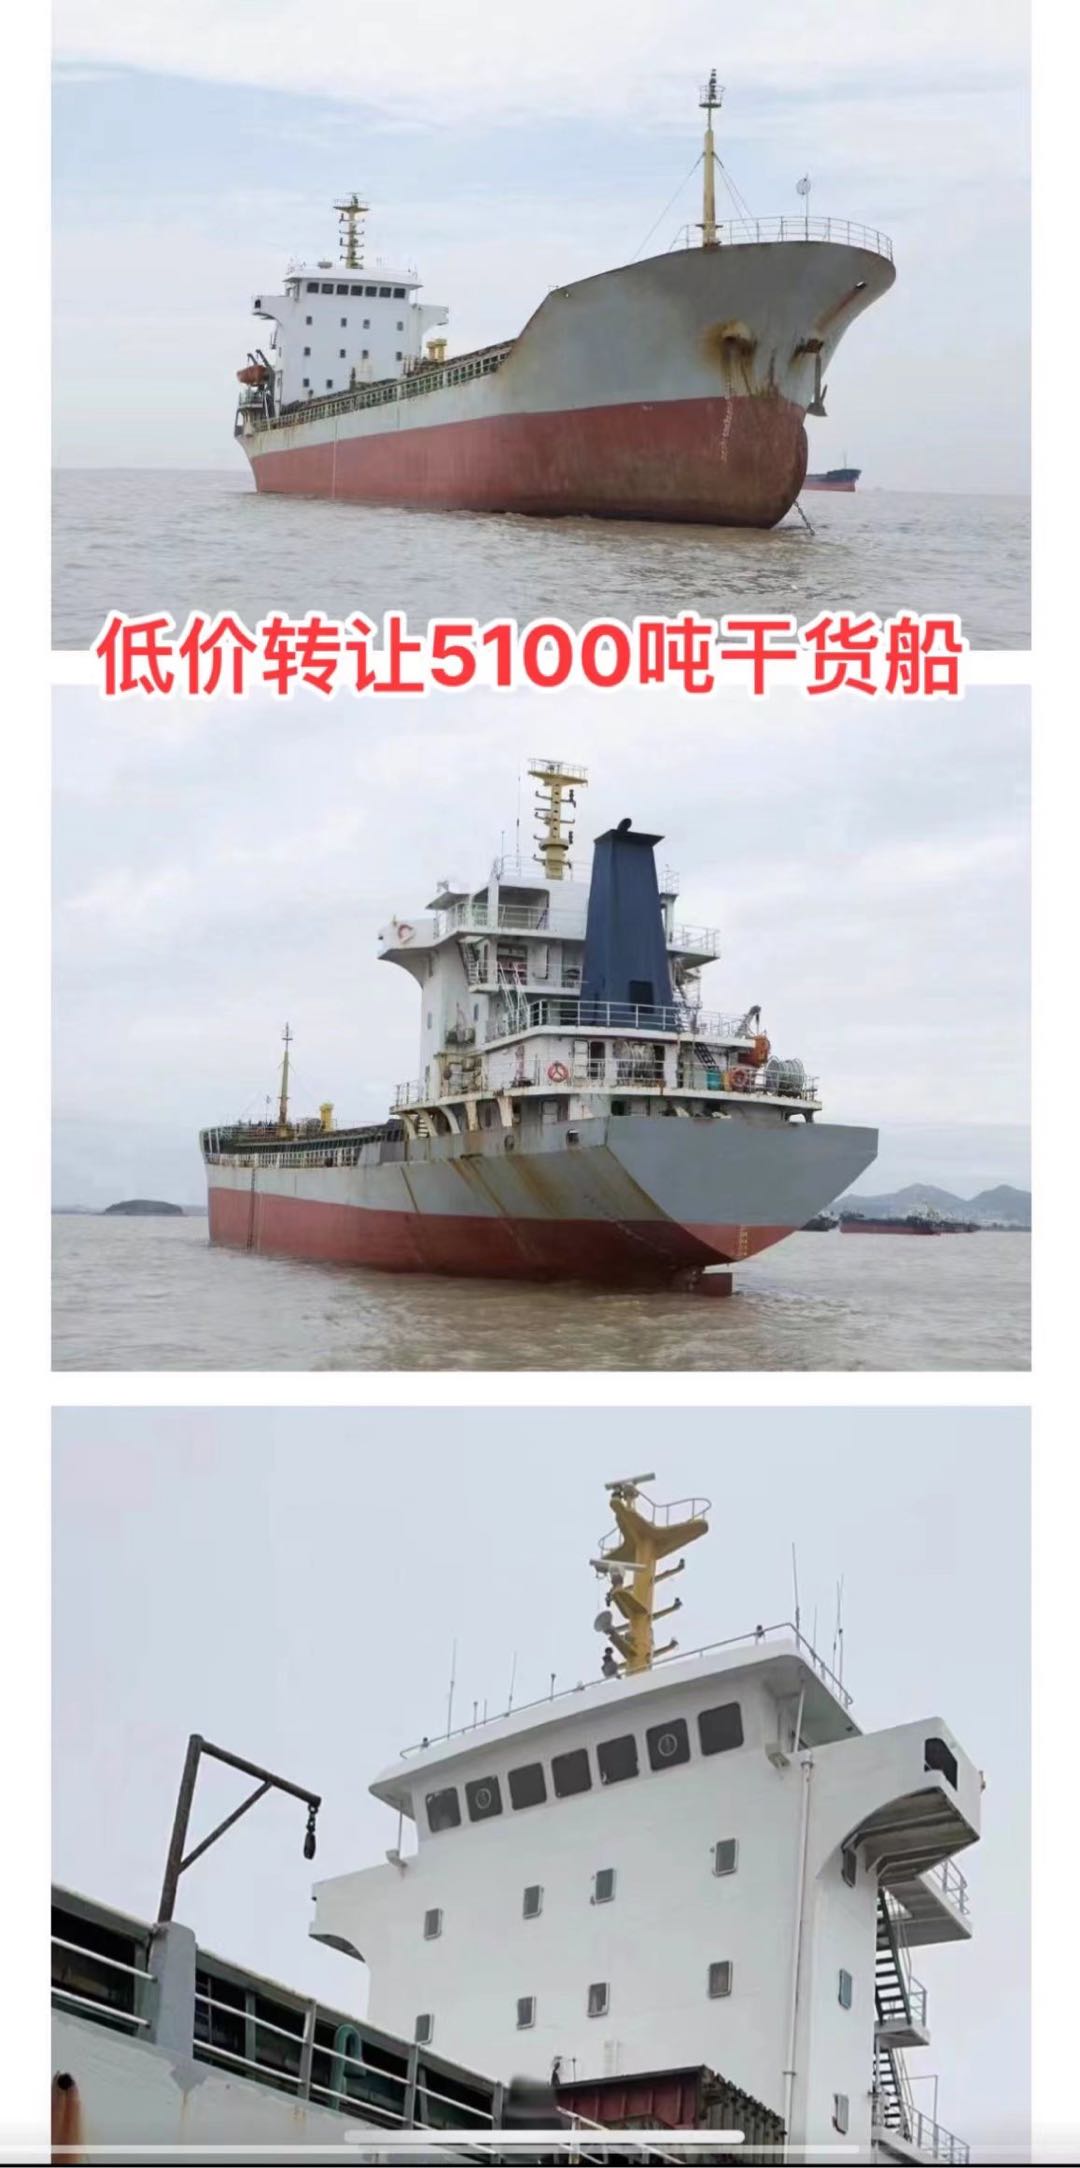 低价出售04年5100吨干货船